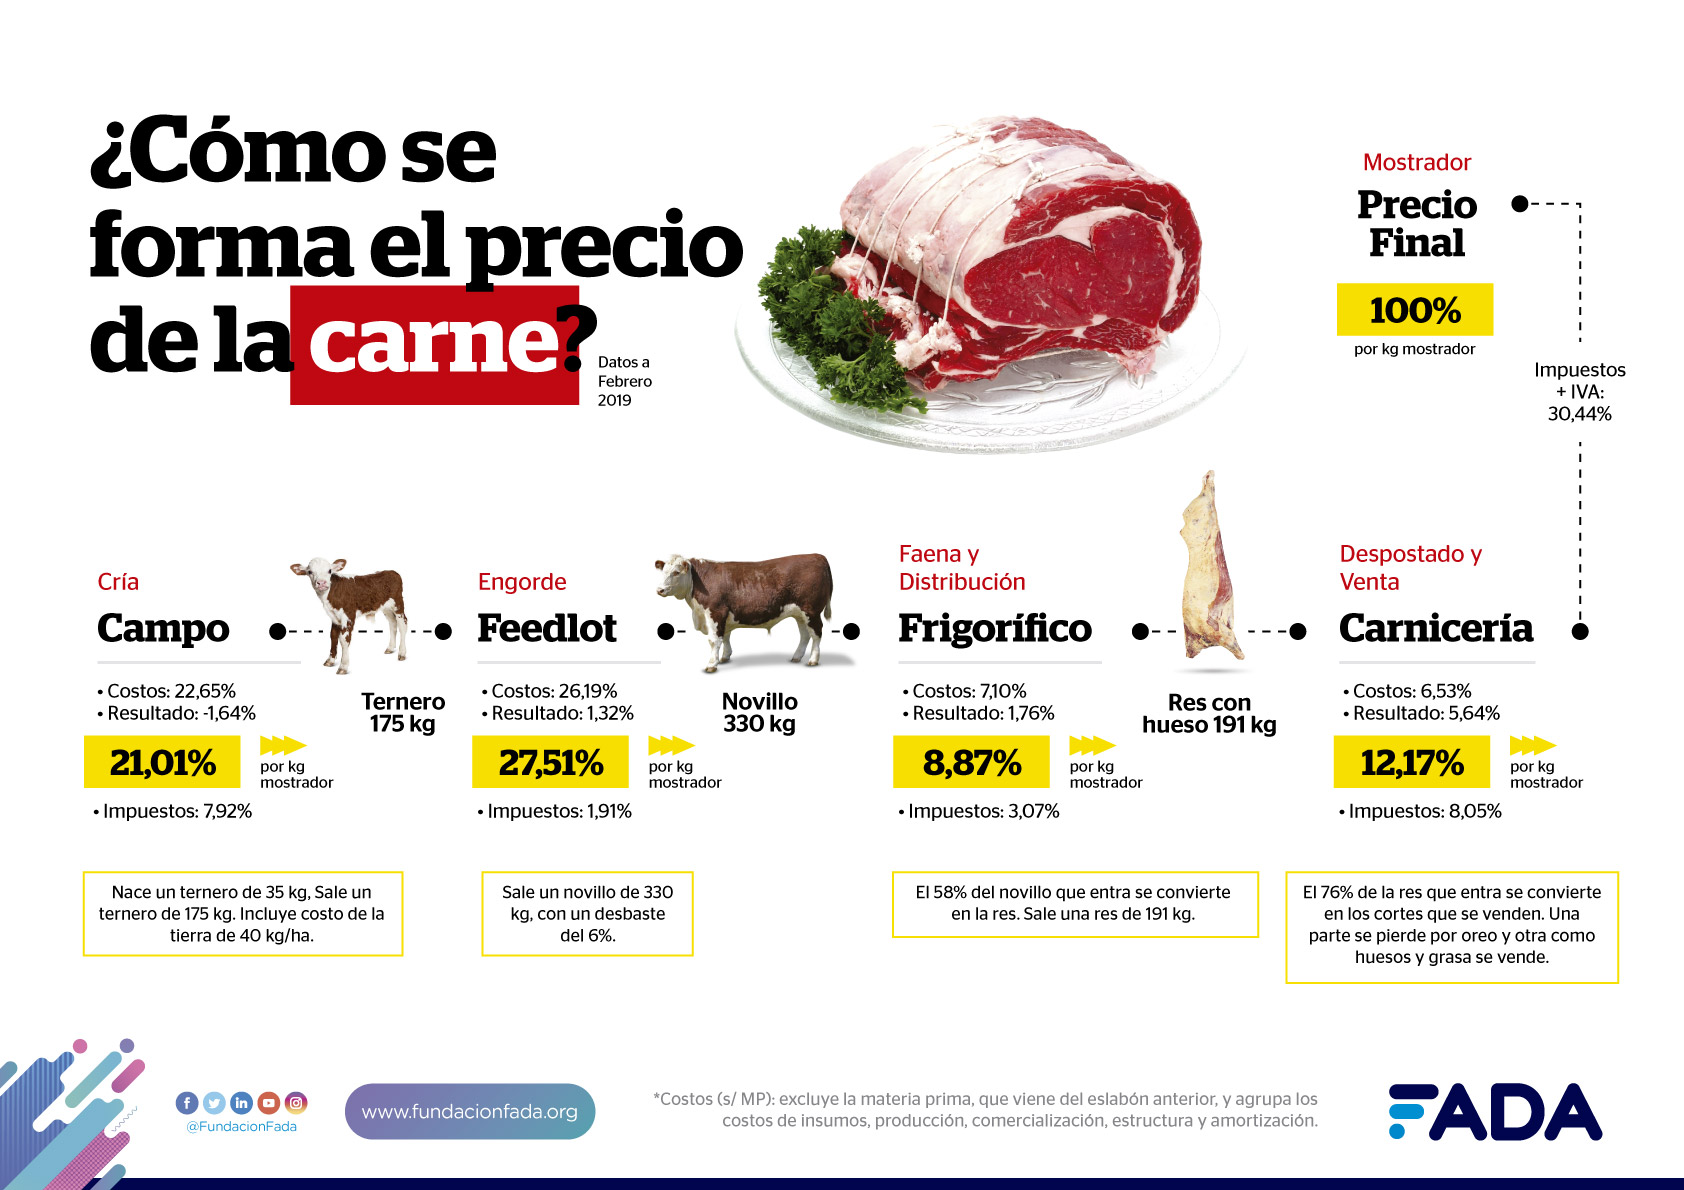 “Si se trata de la carne, el precio se multiplica casi tres veces”, al